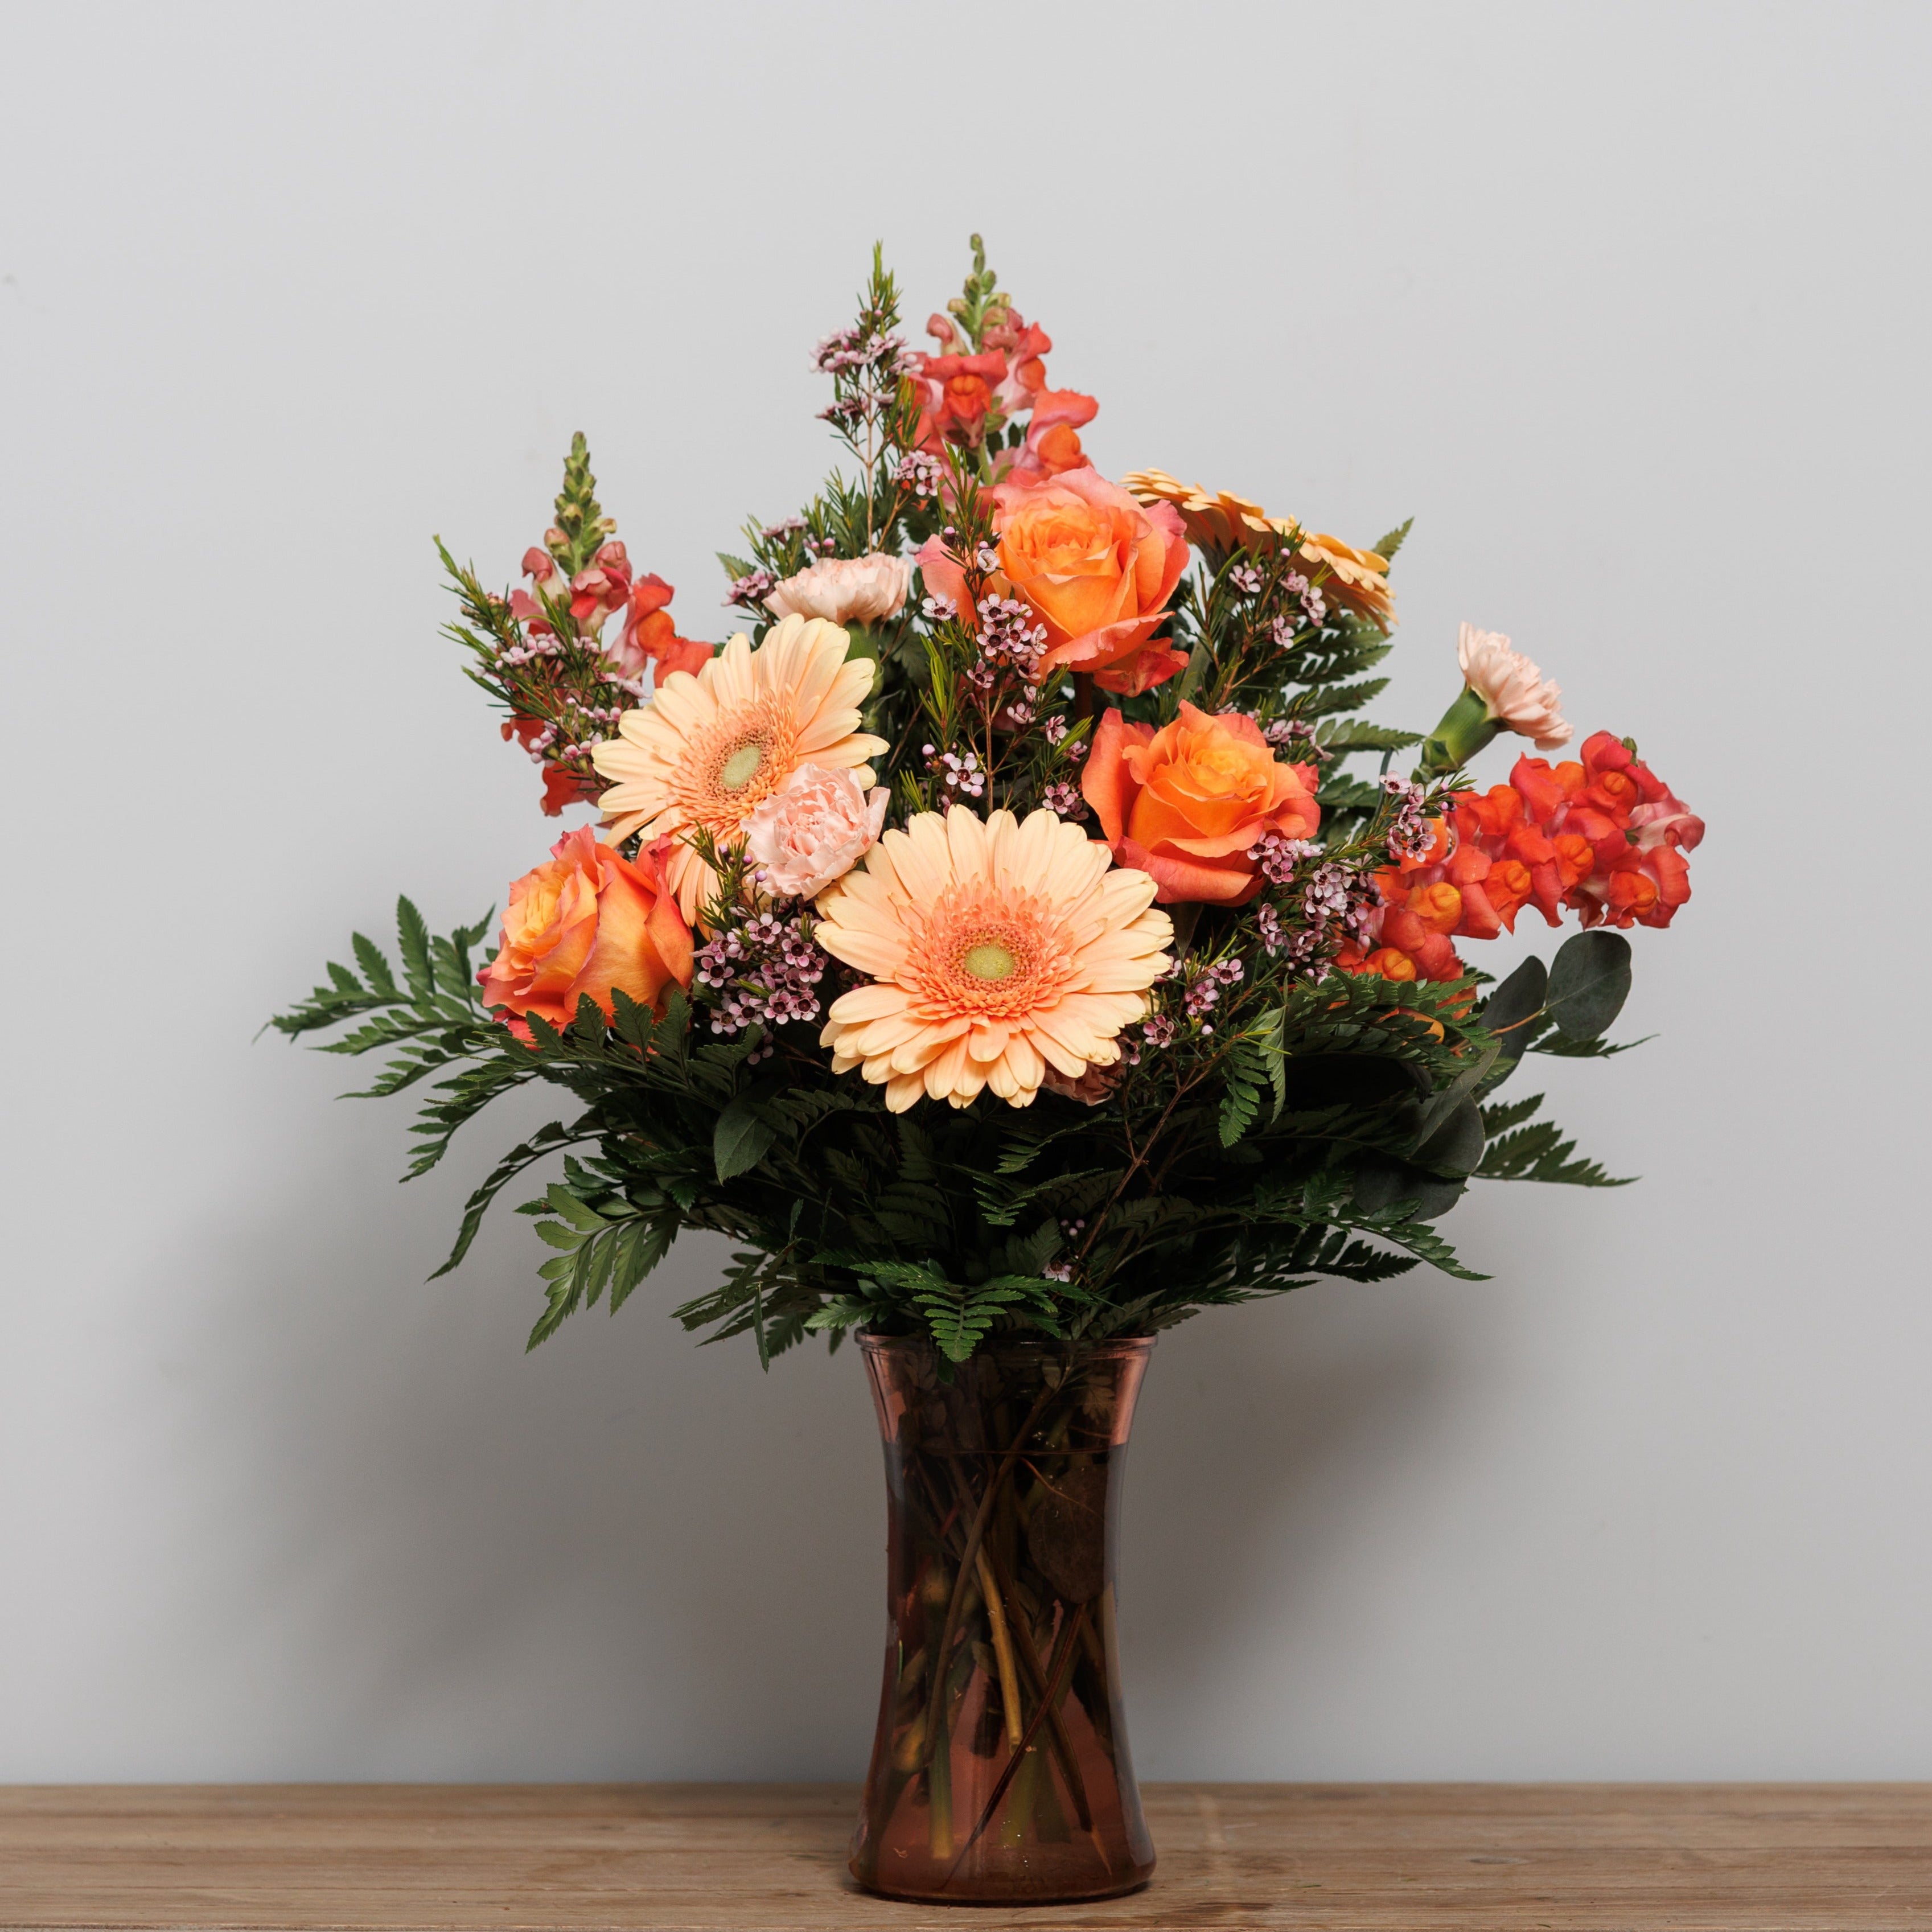 A peach and orange flower arrangement.